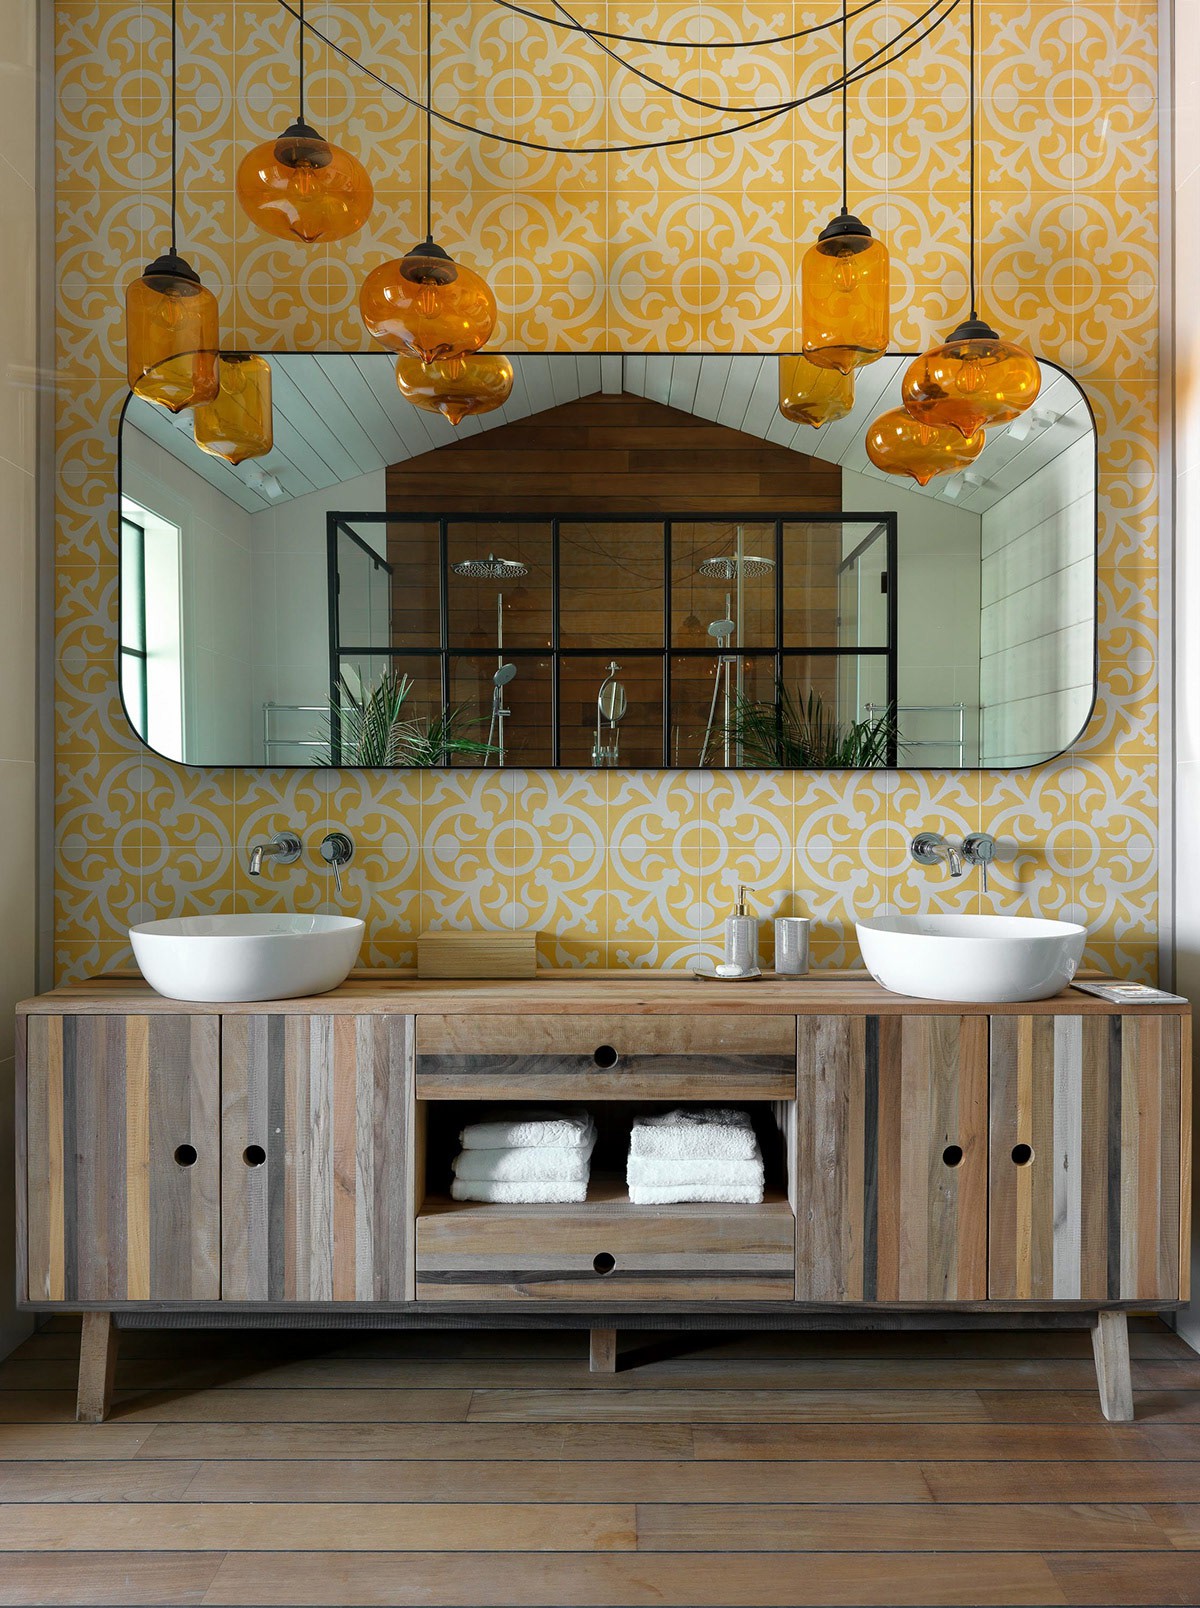 Hình ảnh phòng tắm nghệ thuật với giấy dán tường màu vàng chanh, bồn rửa bằng sứ trắng, đèn thả trang trí, tủ lưu trữ bằng gỗ cùng tông với sàn nhà